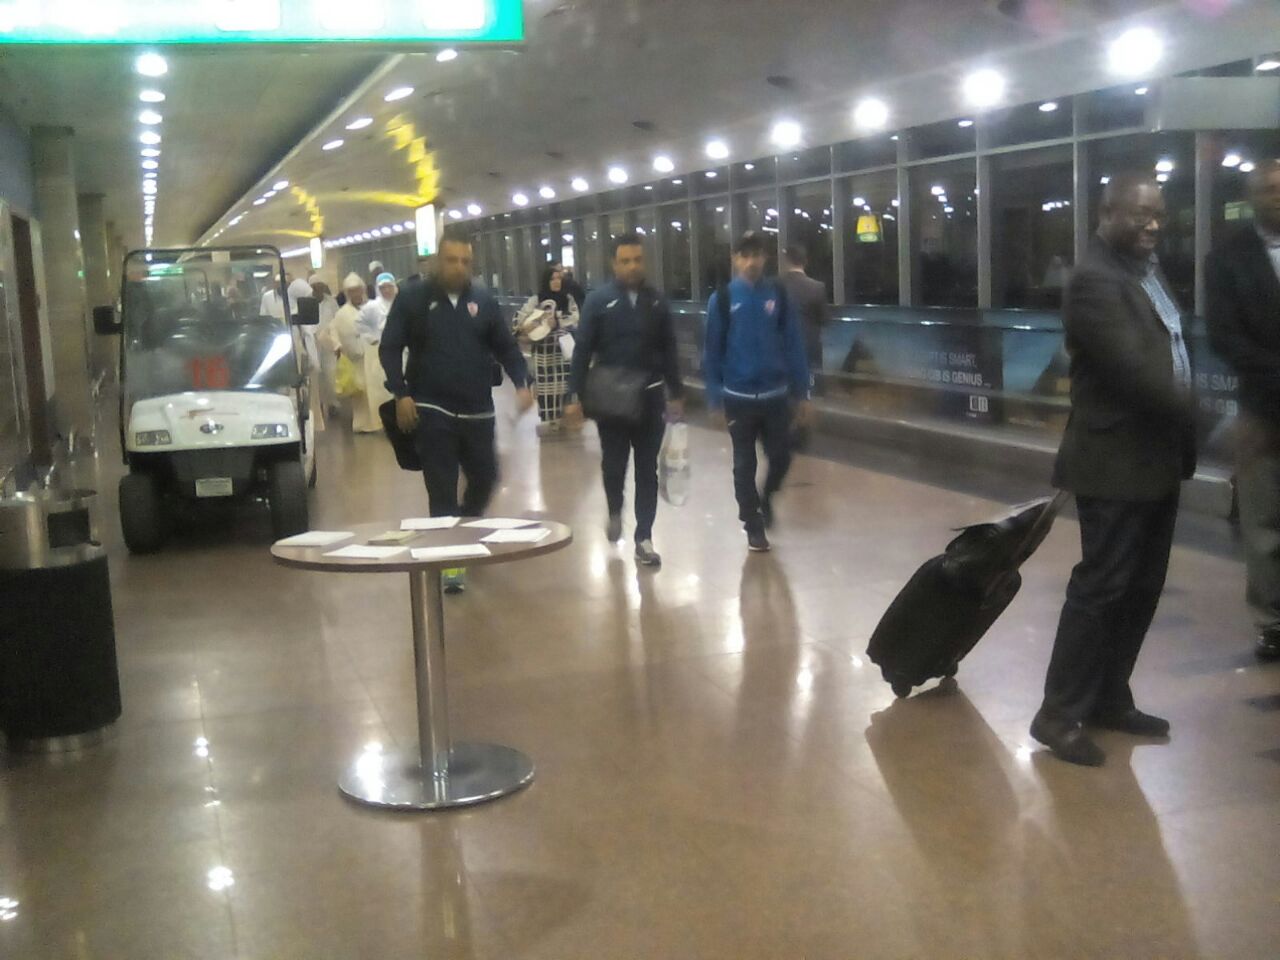 لحظة وصول الفريق الى المطار